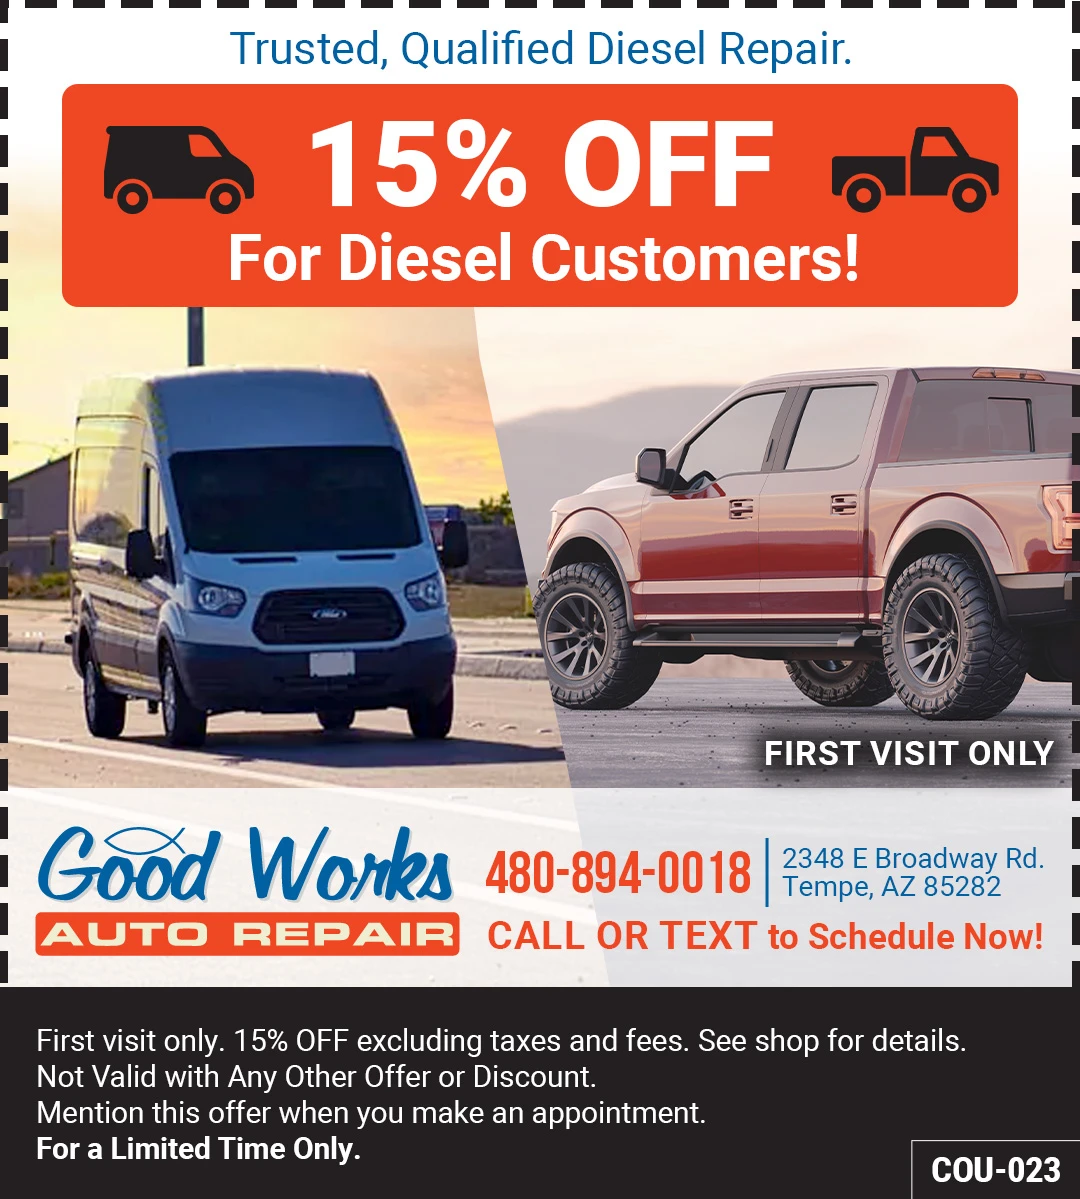 Diesel repair coupon for first visit